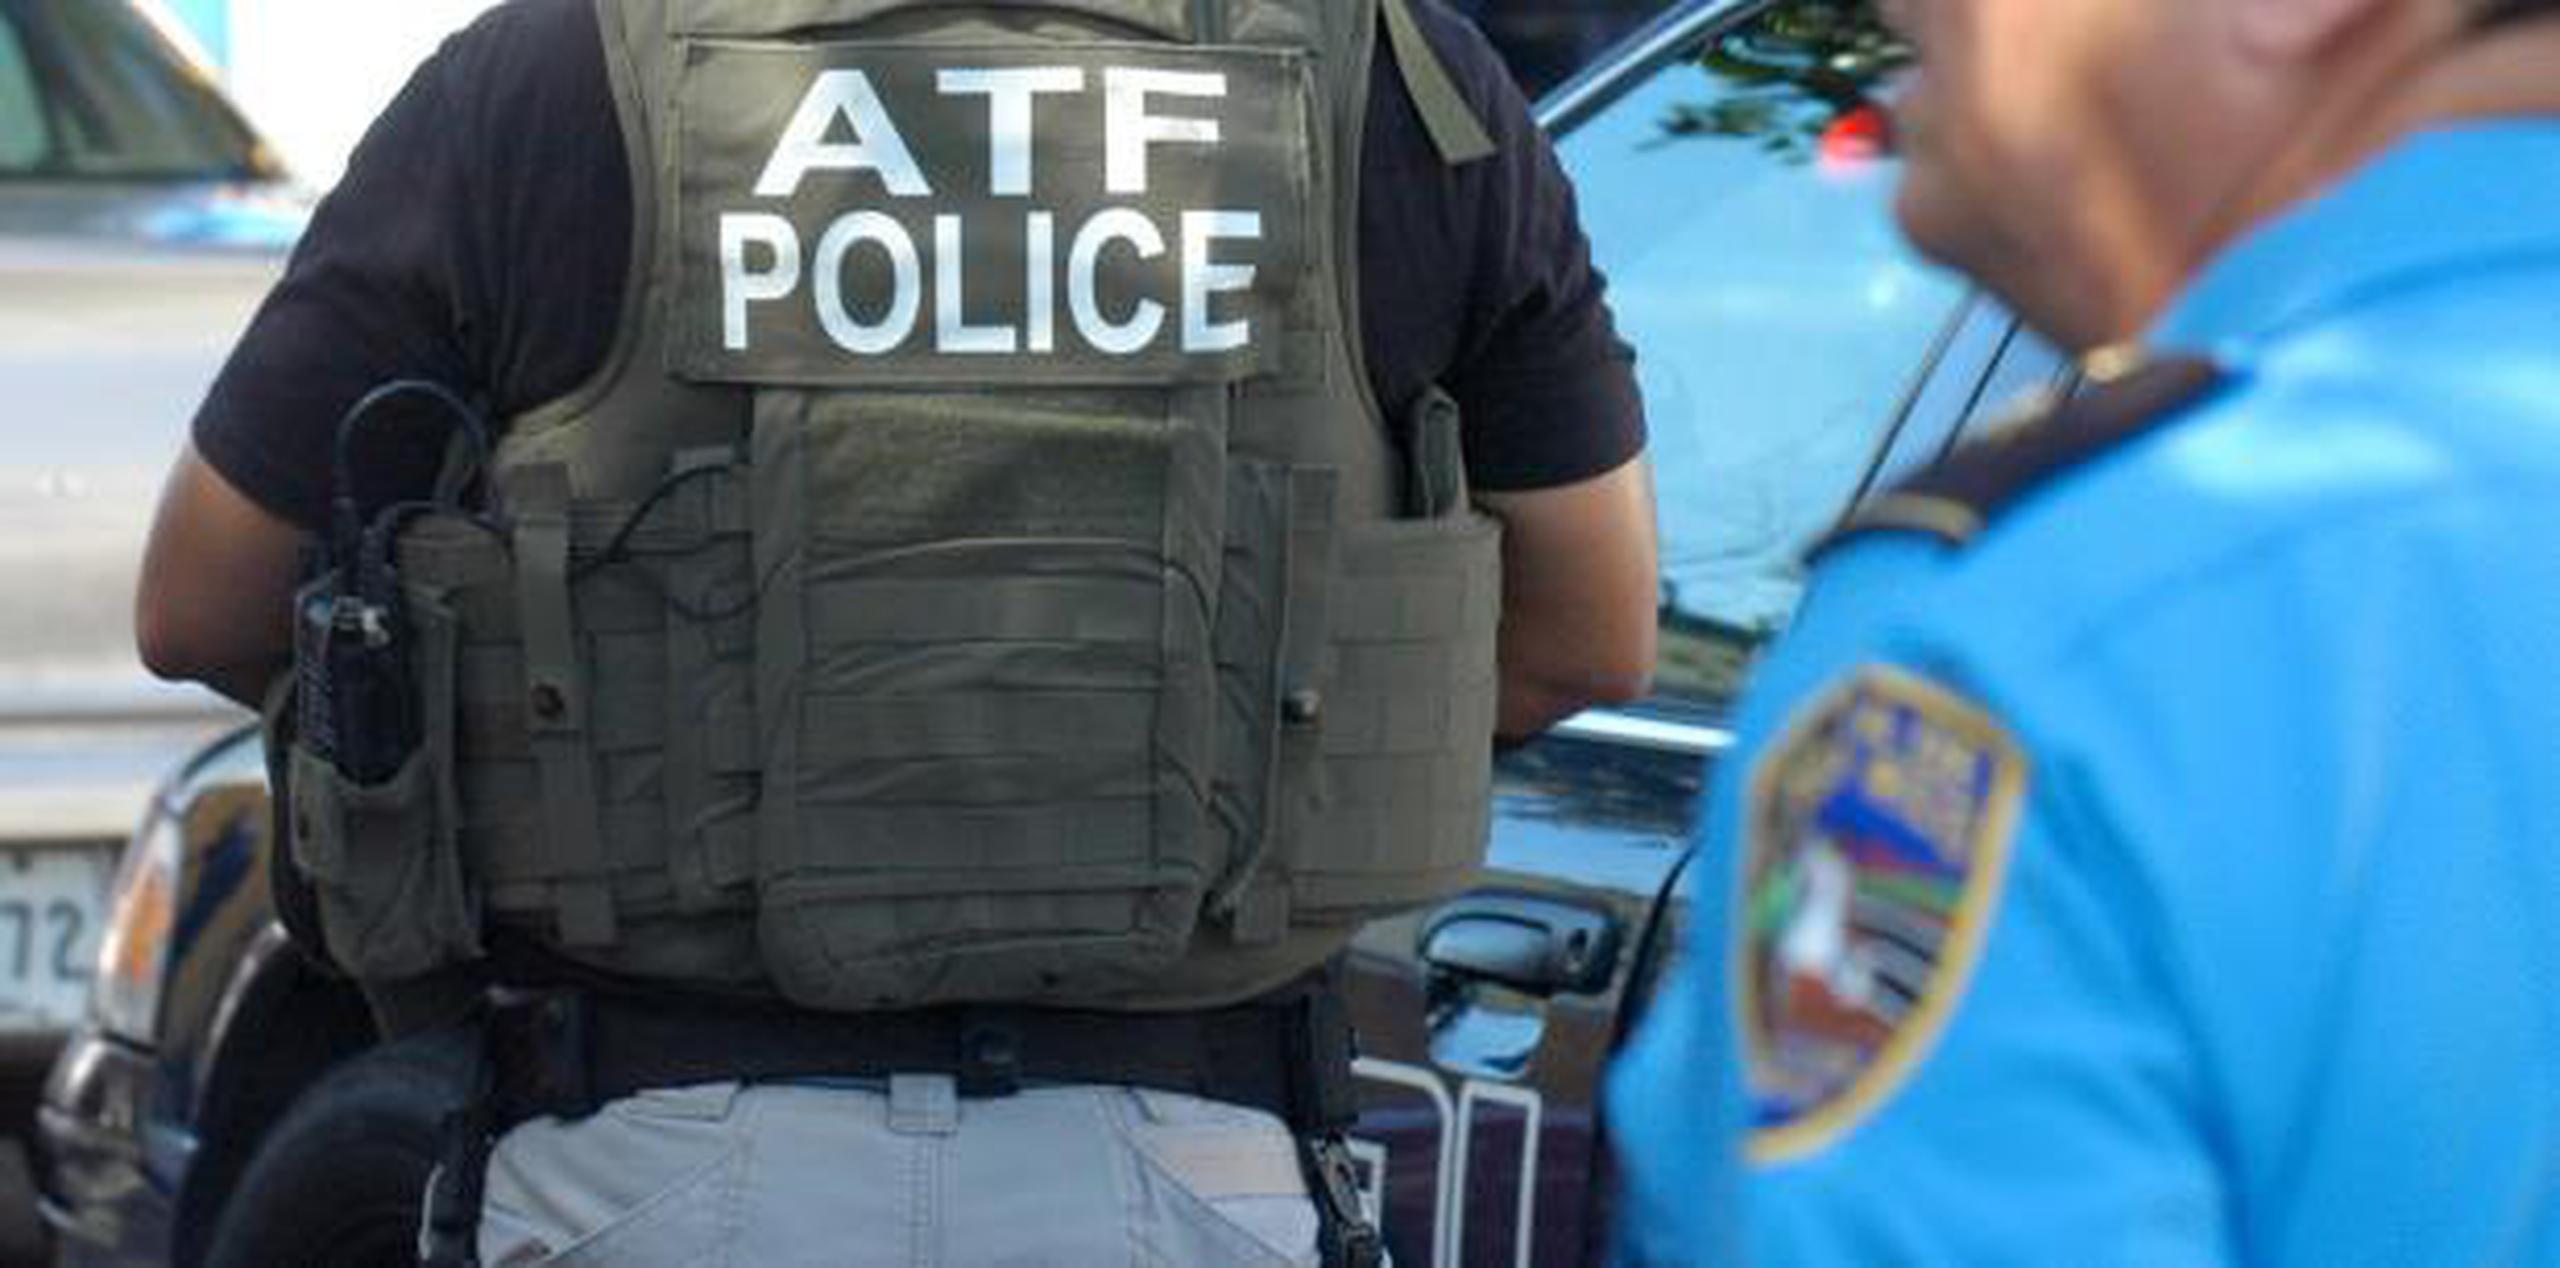 La agencia de Alcohol, Tabaco, Armas de Fuego y Explosivos (ATF, por sus siglas en inglés) tomó jurisdicción del caso. (archivo)

